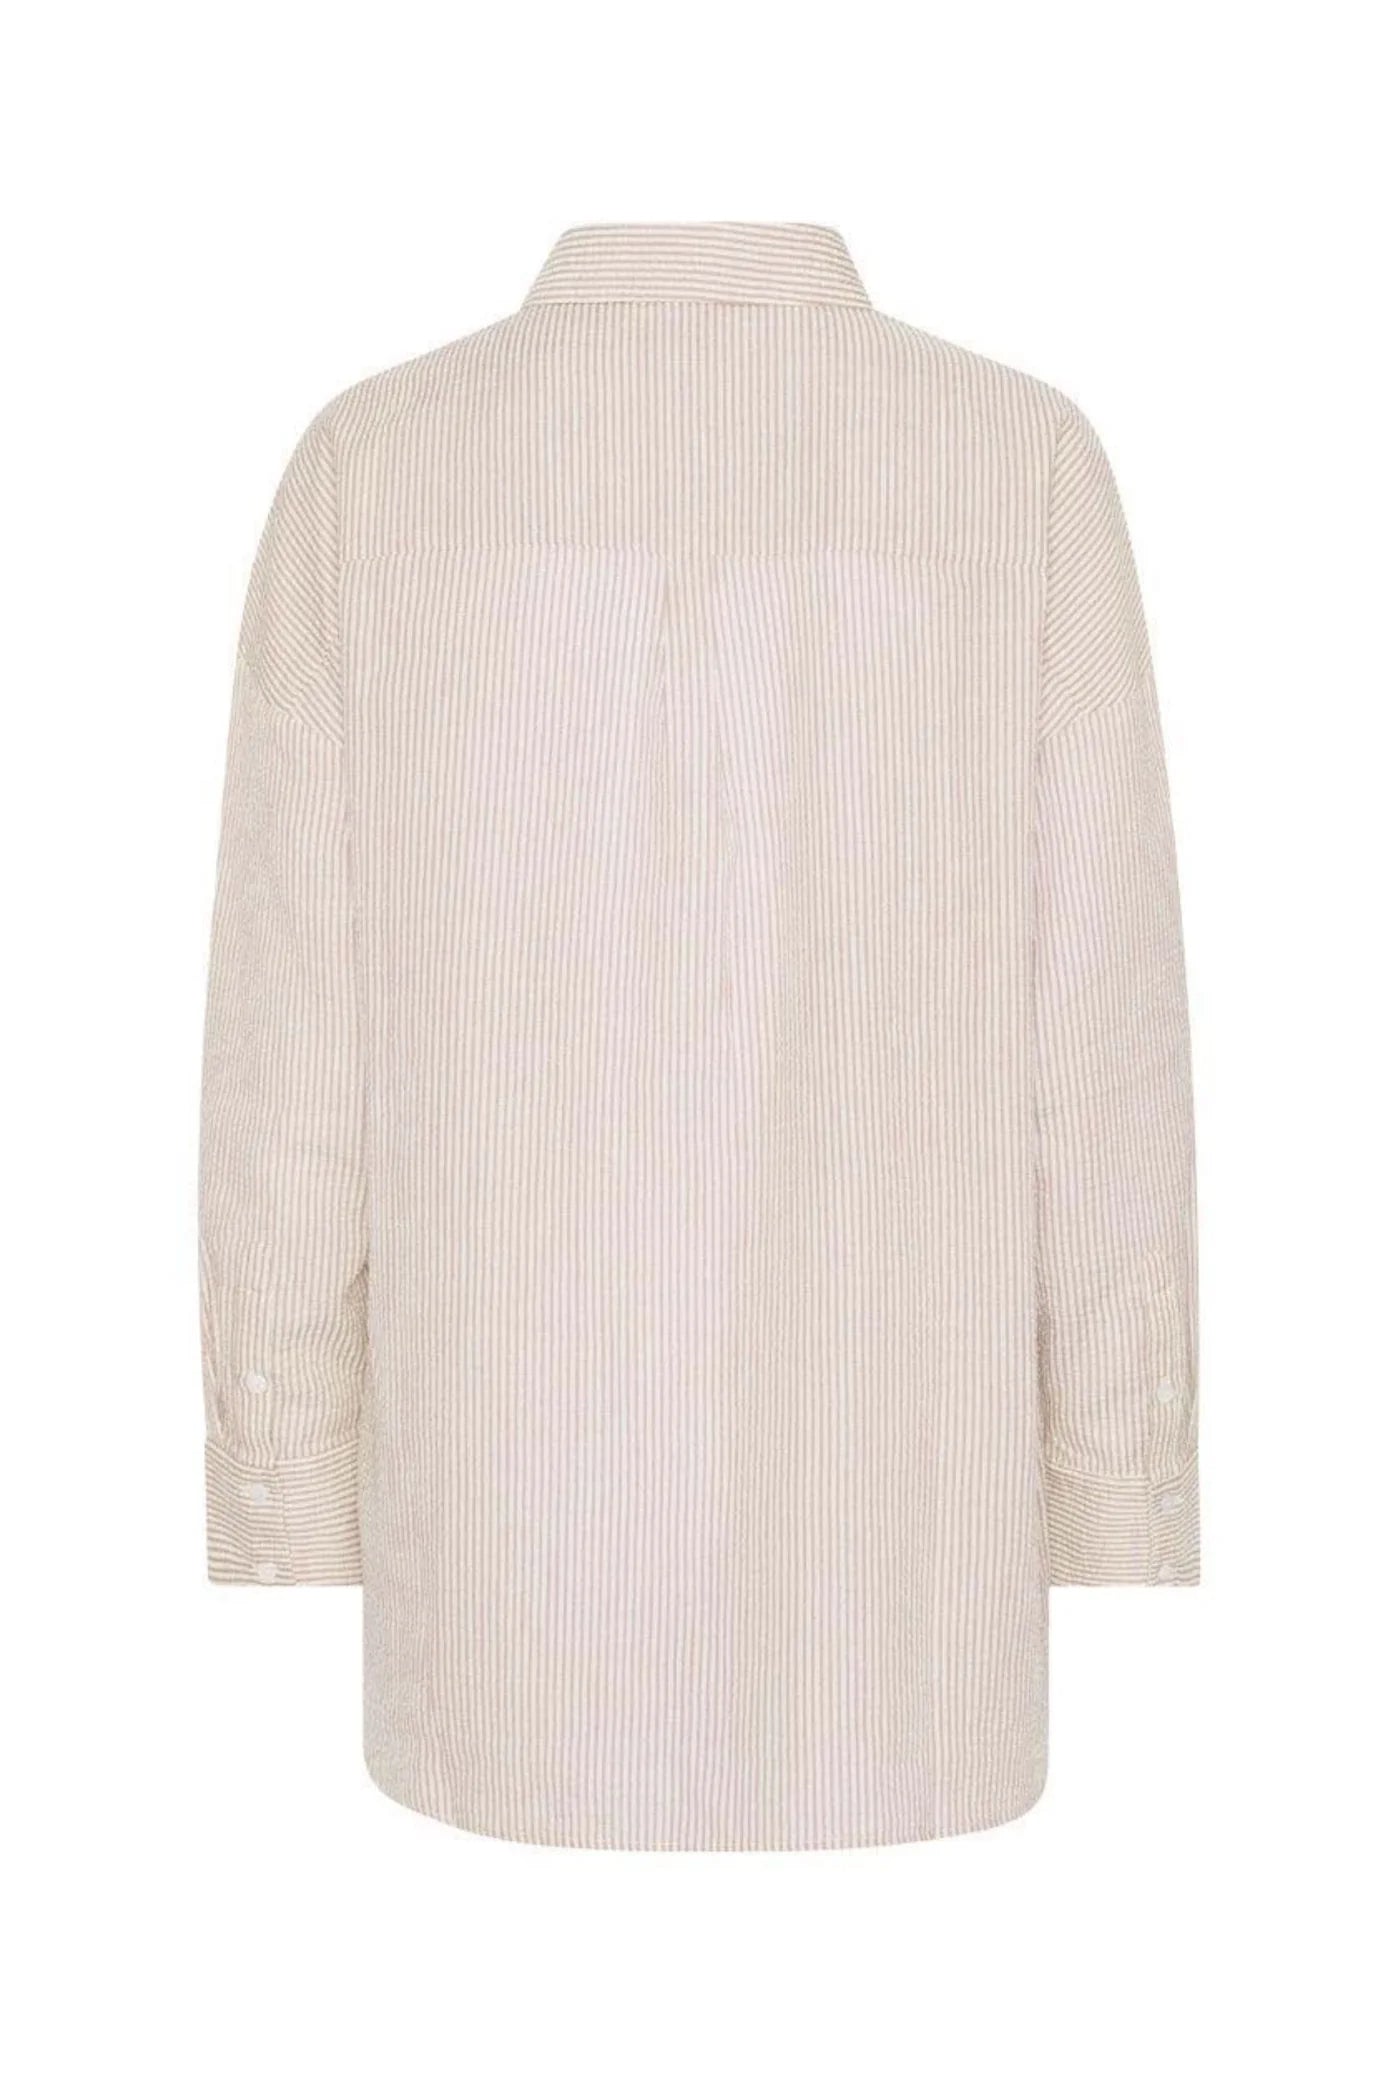 Sonja Shirt Sand/White